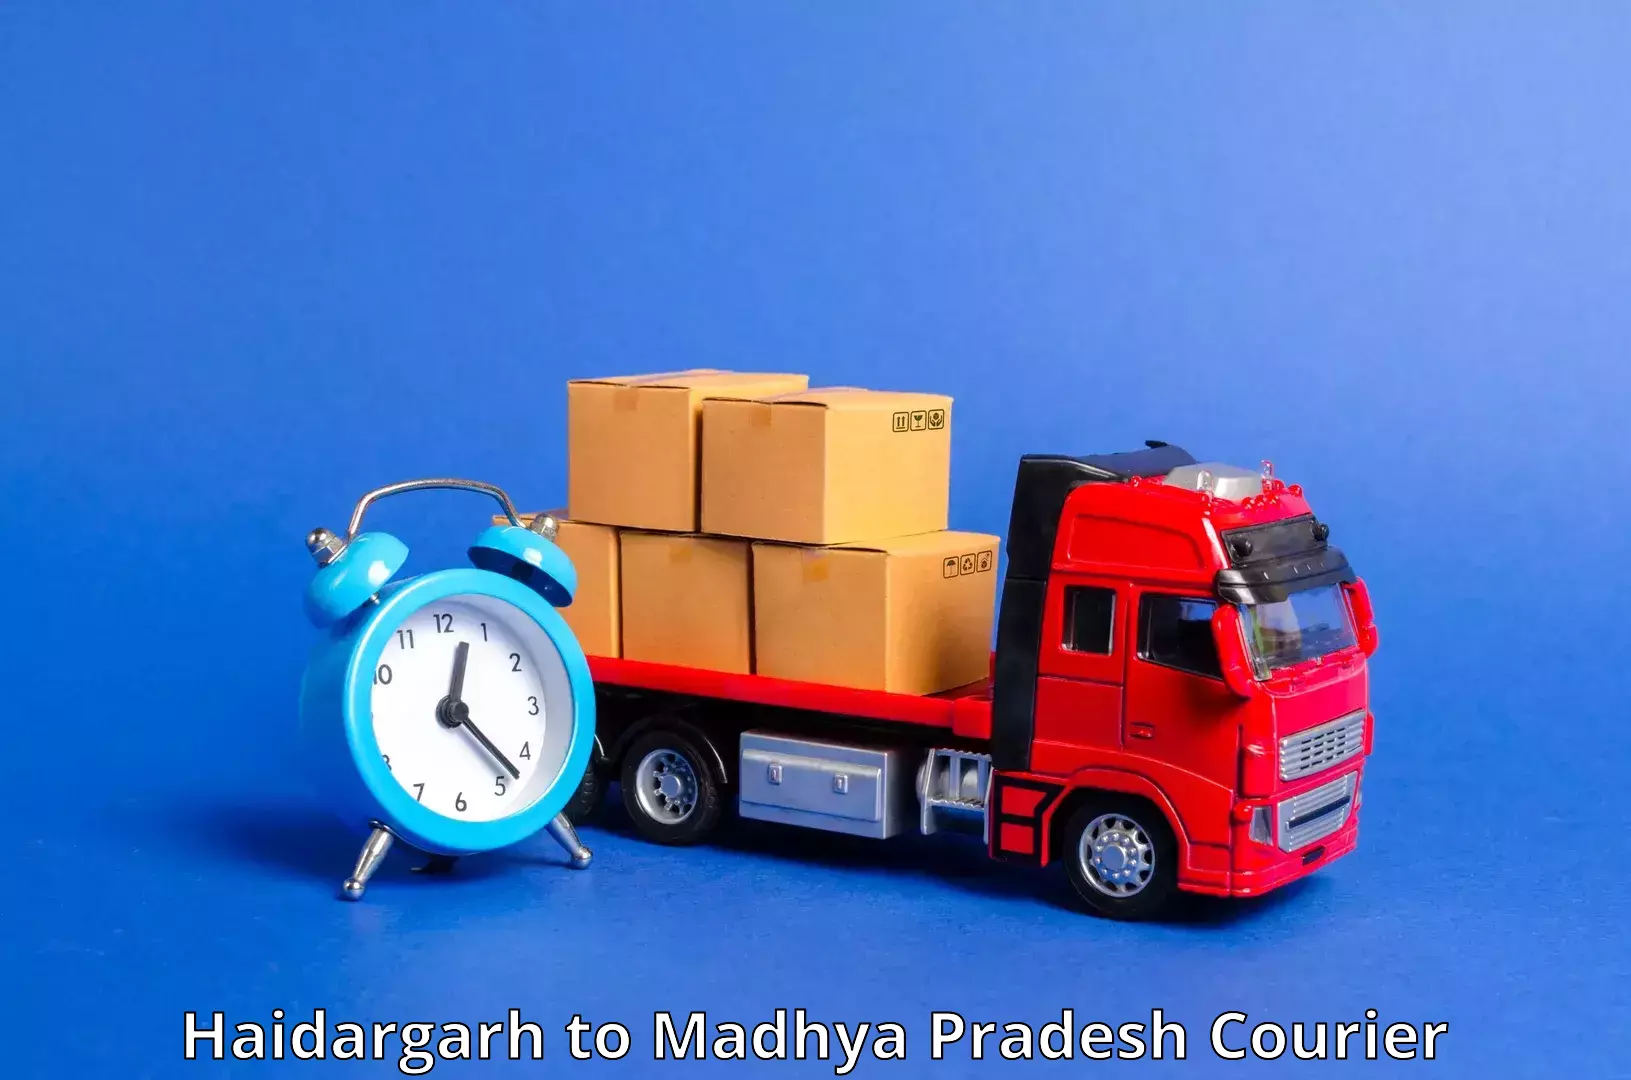 Premium courier solutions Haidargarh to Ratlam